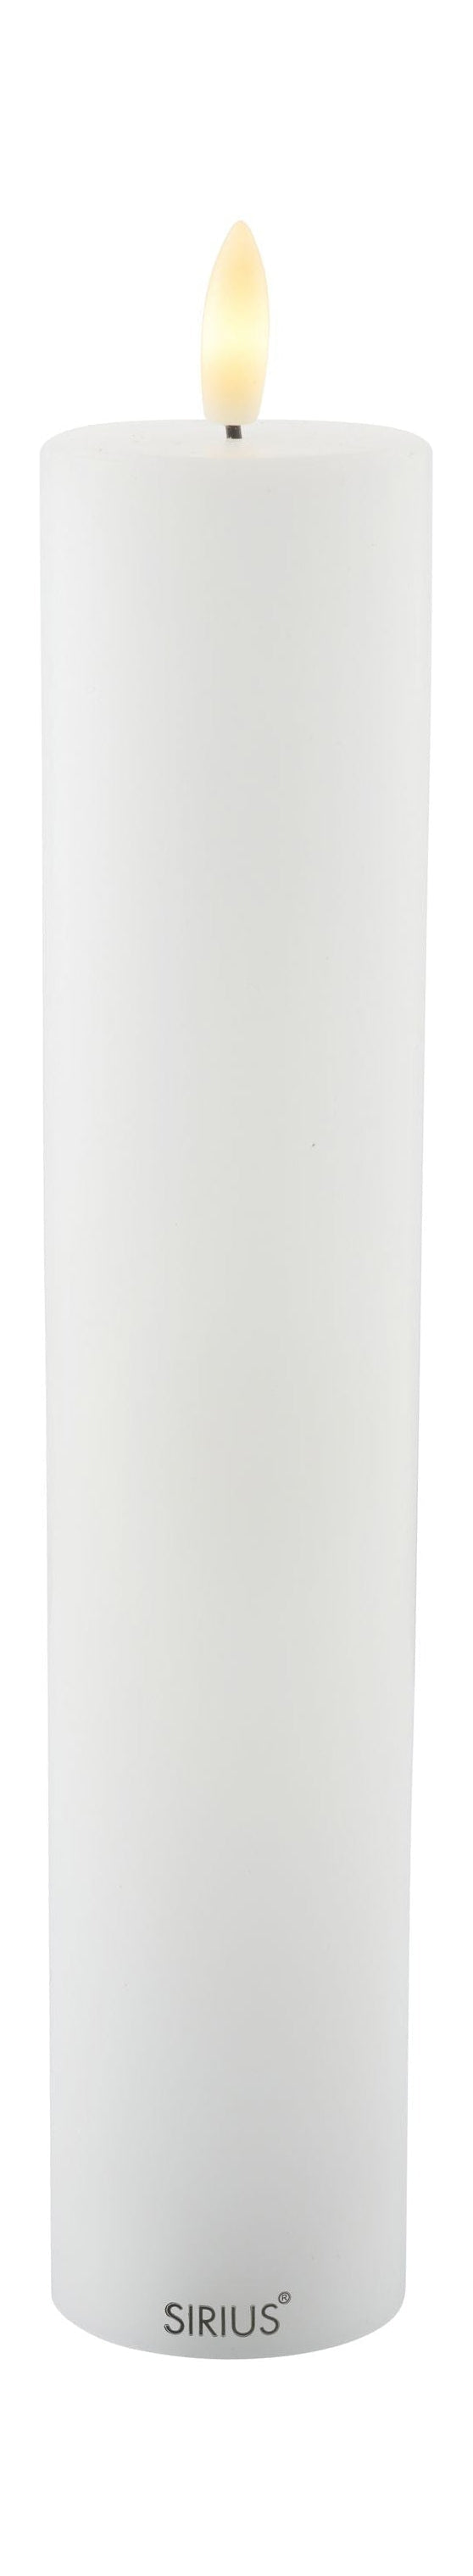 Sirius Sille ladattava LED -kynttilä valkoinen, Ø5x H25 cm